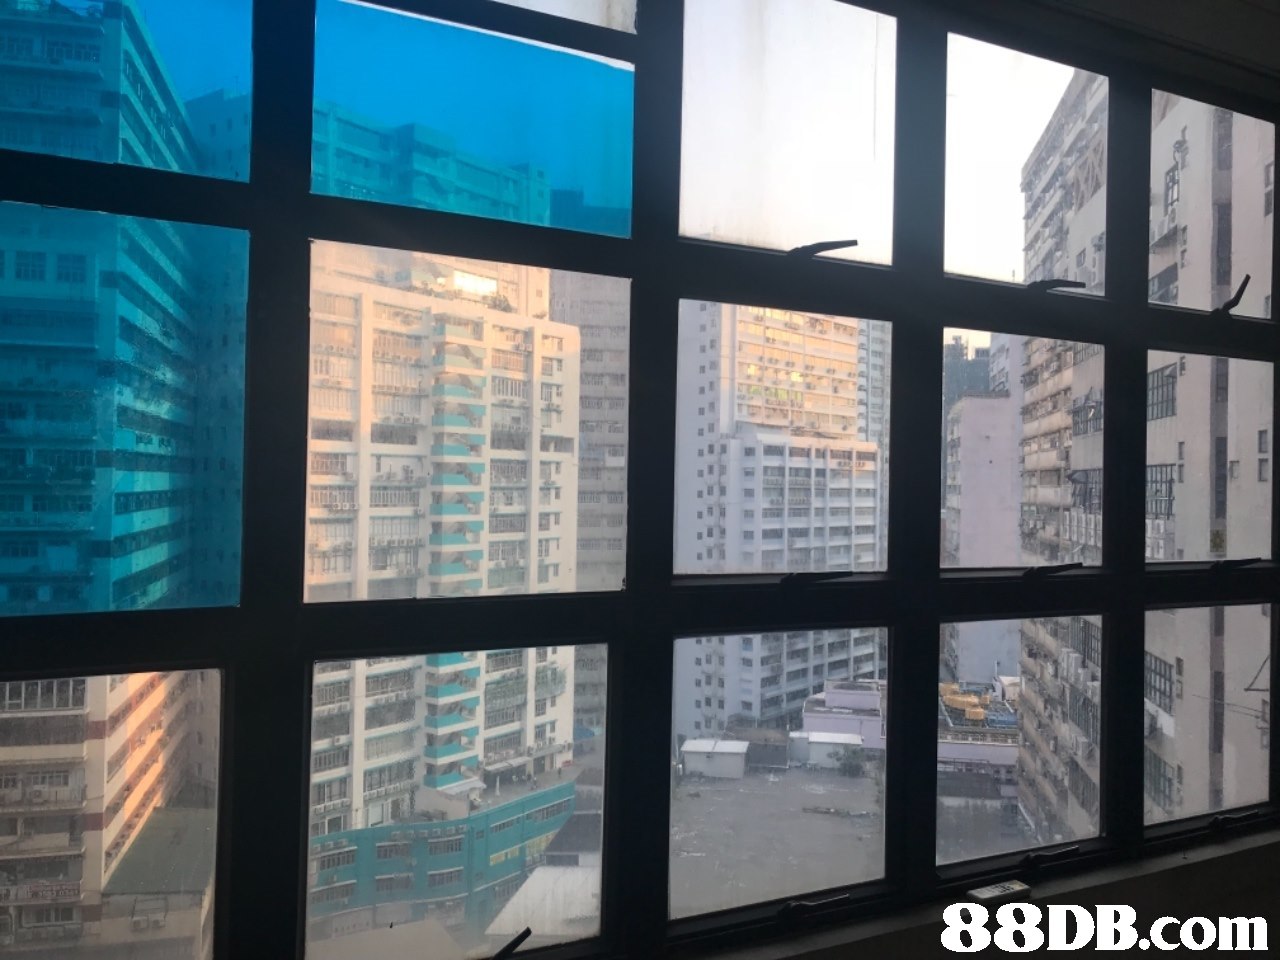   property,glass,window,daylighting,condominium